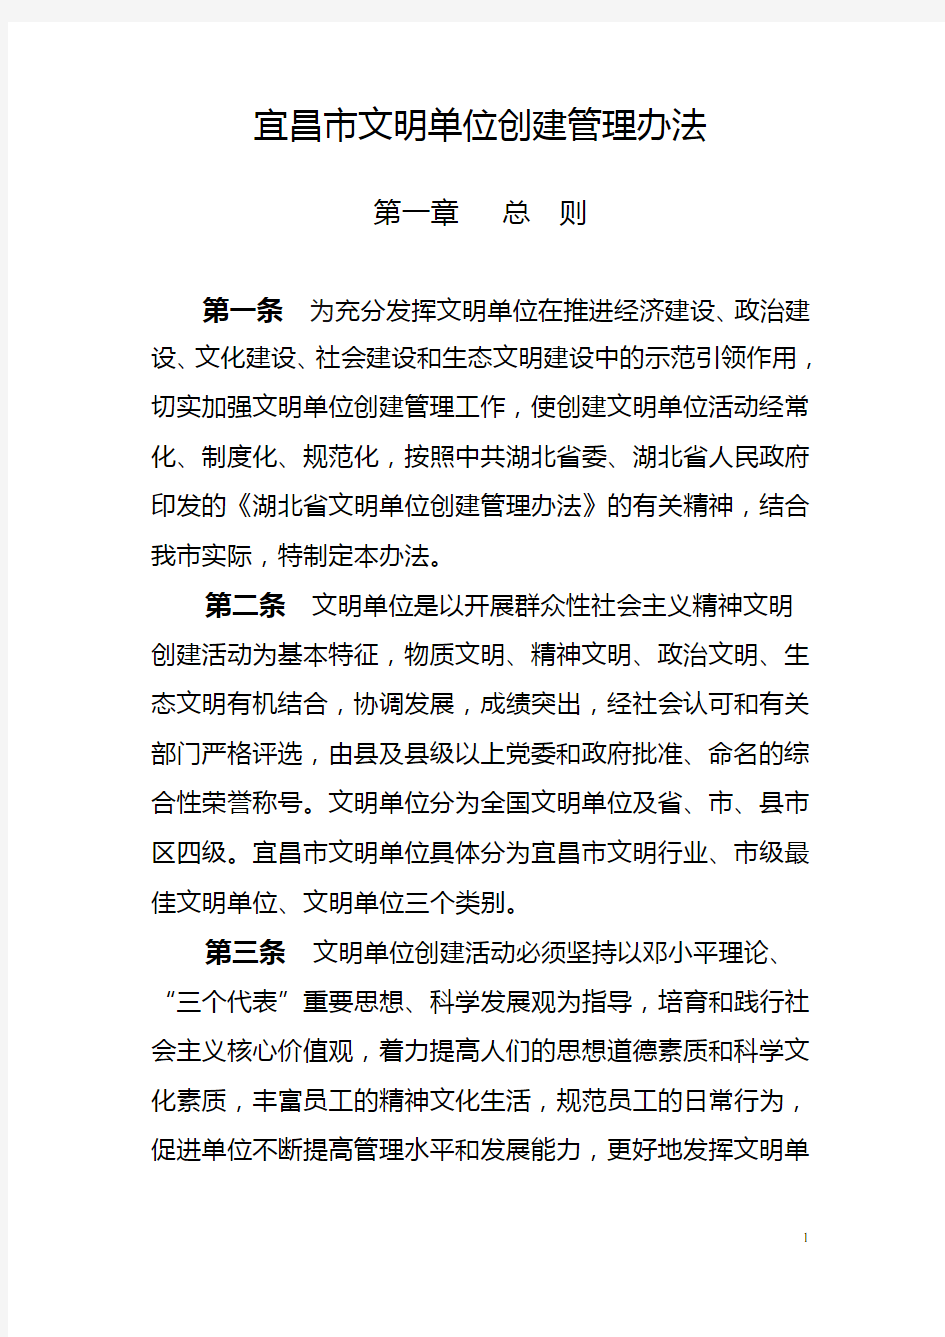 宜昌市文明单位创建管理办法(2015)定